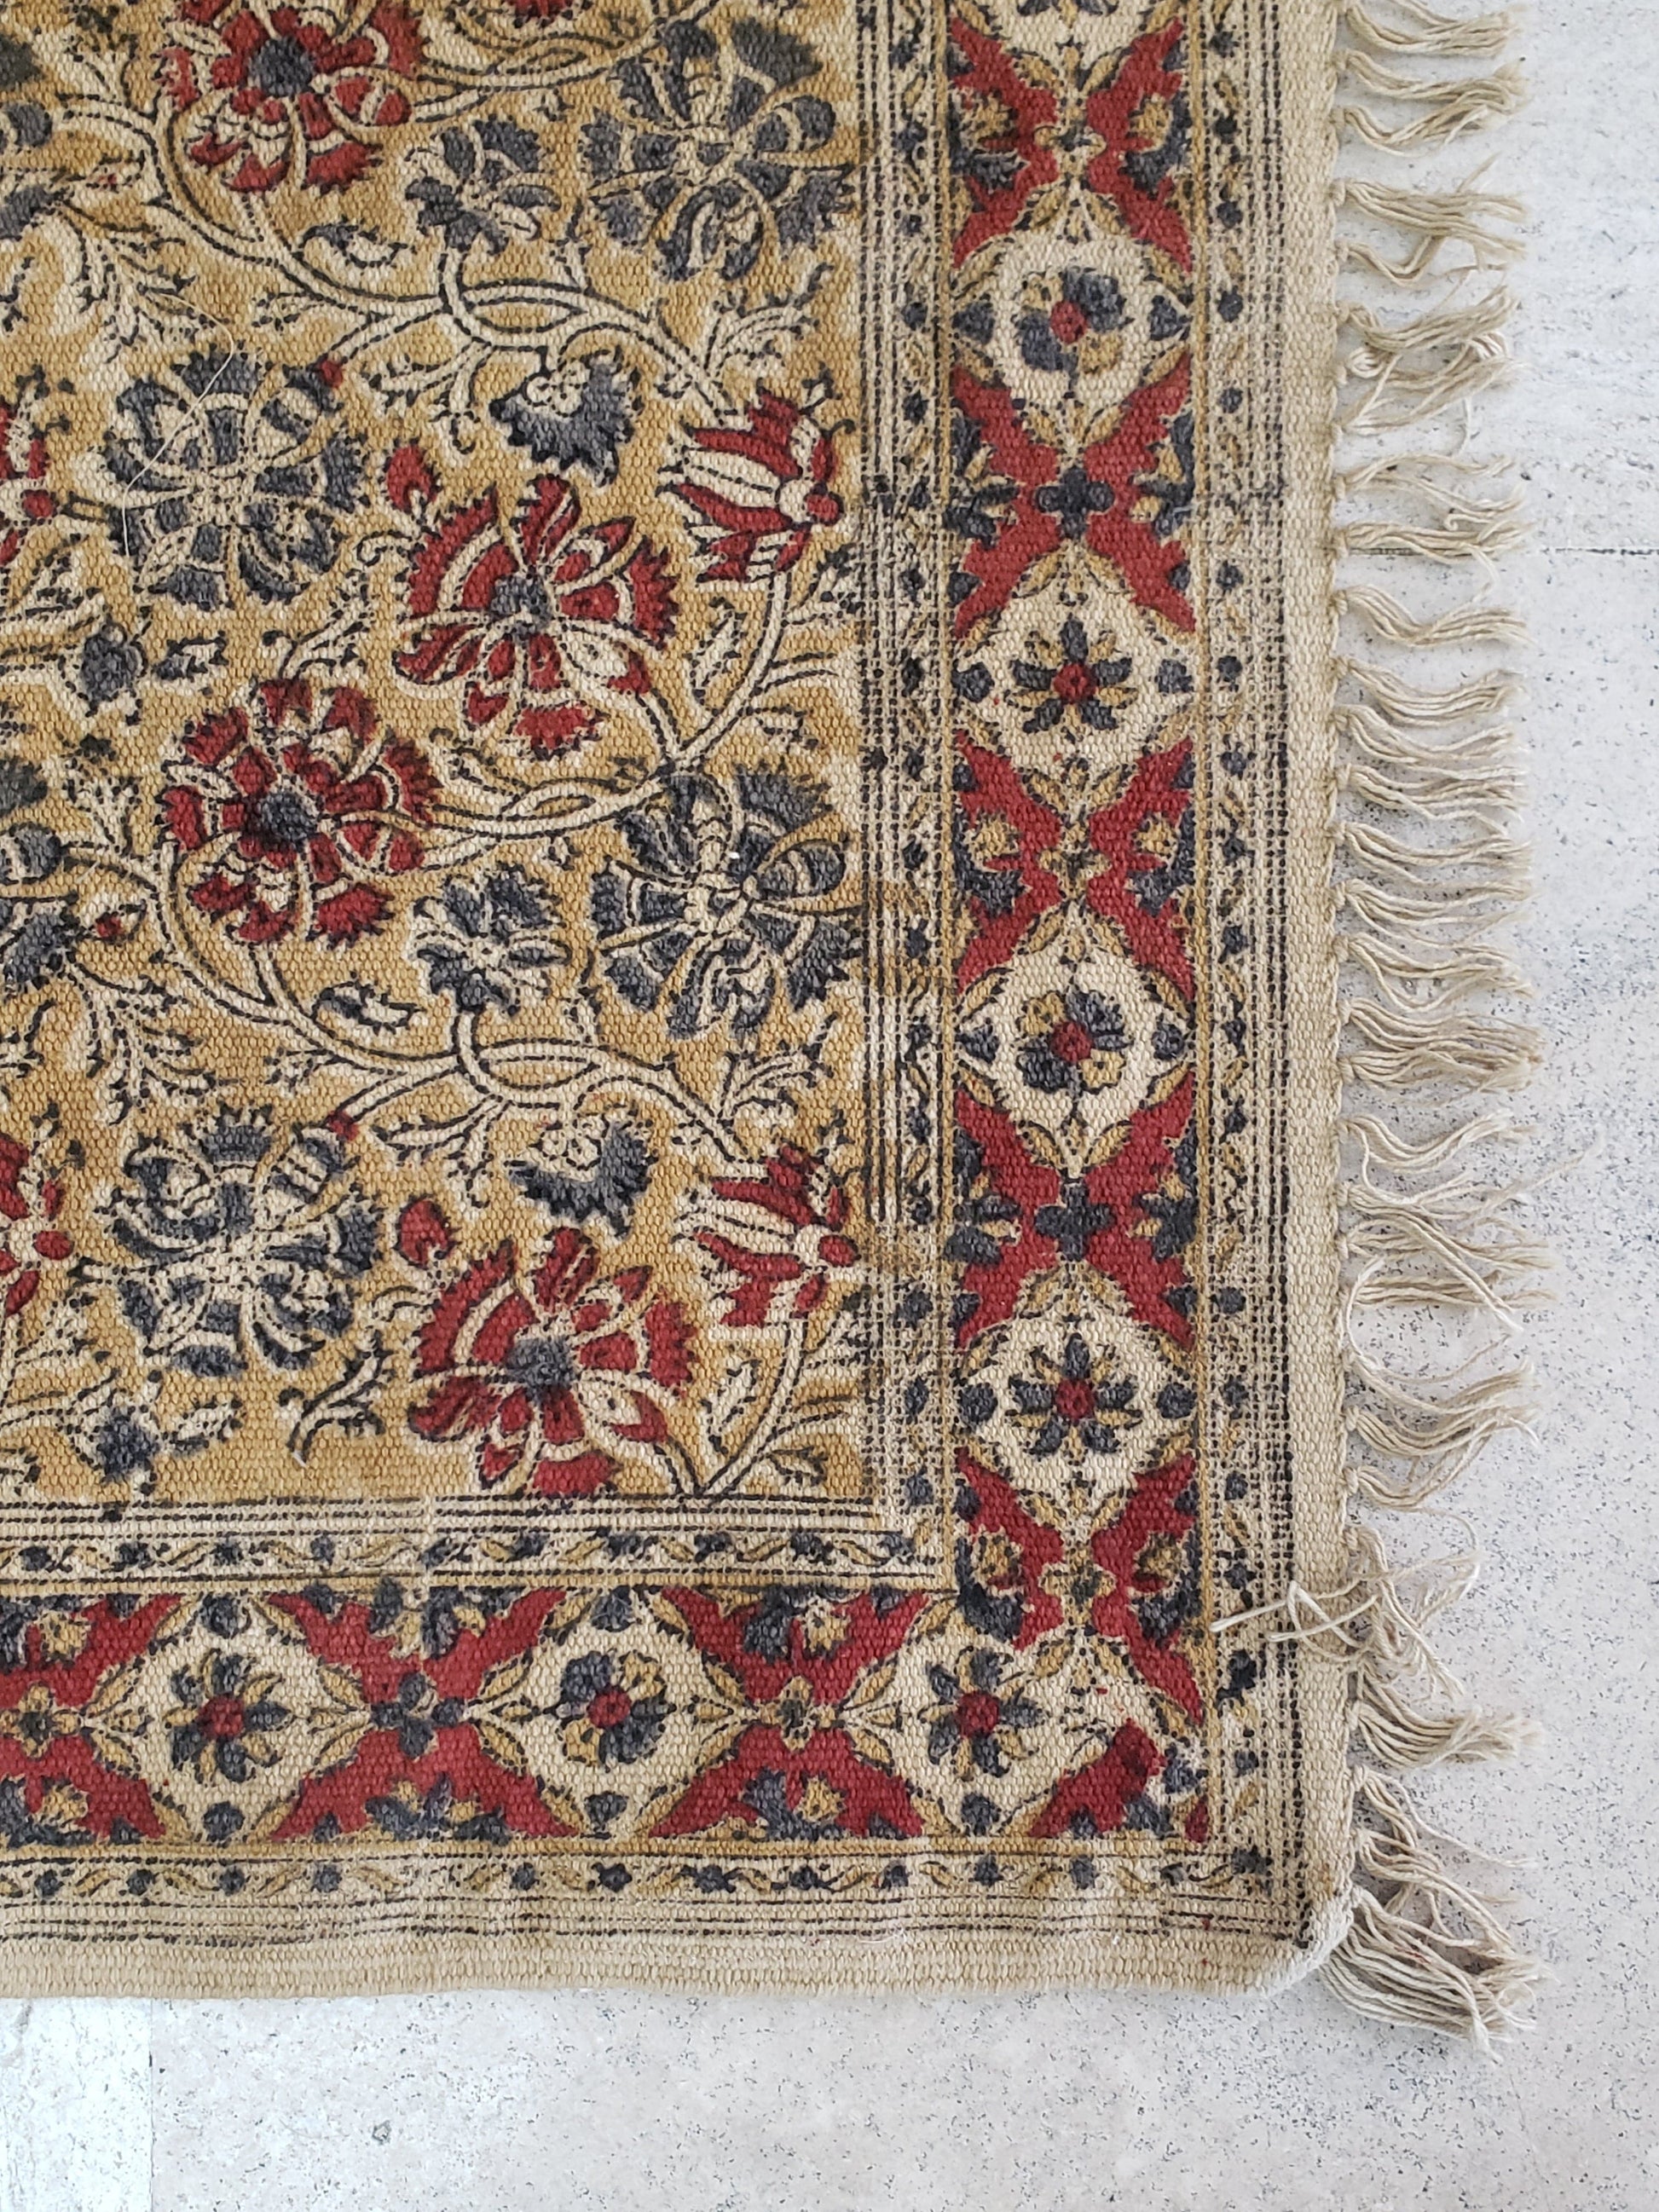 Tapete 100% algodón estampado a mano con diseño tradicional Kalamkari, base ocre con diseño floral en tonos tierra. Hecho en la India.